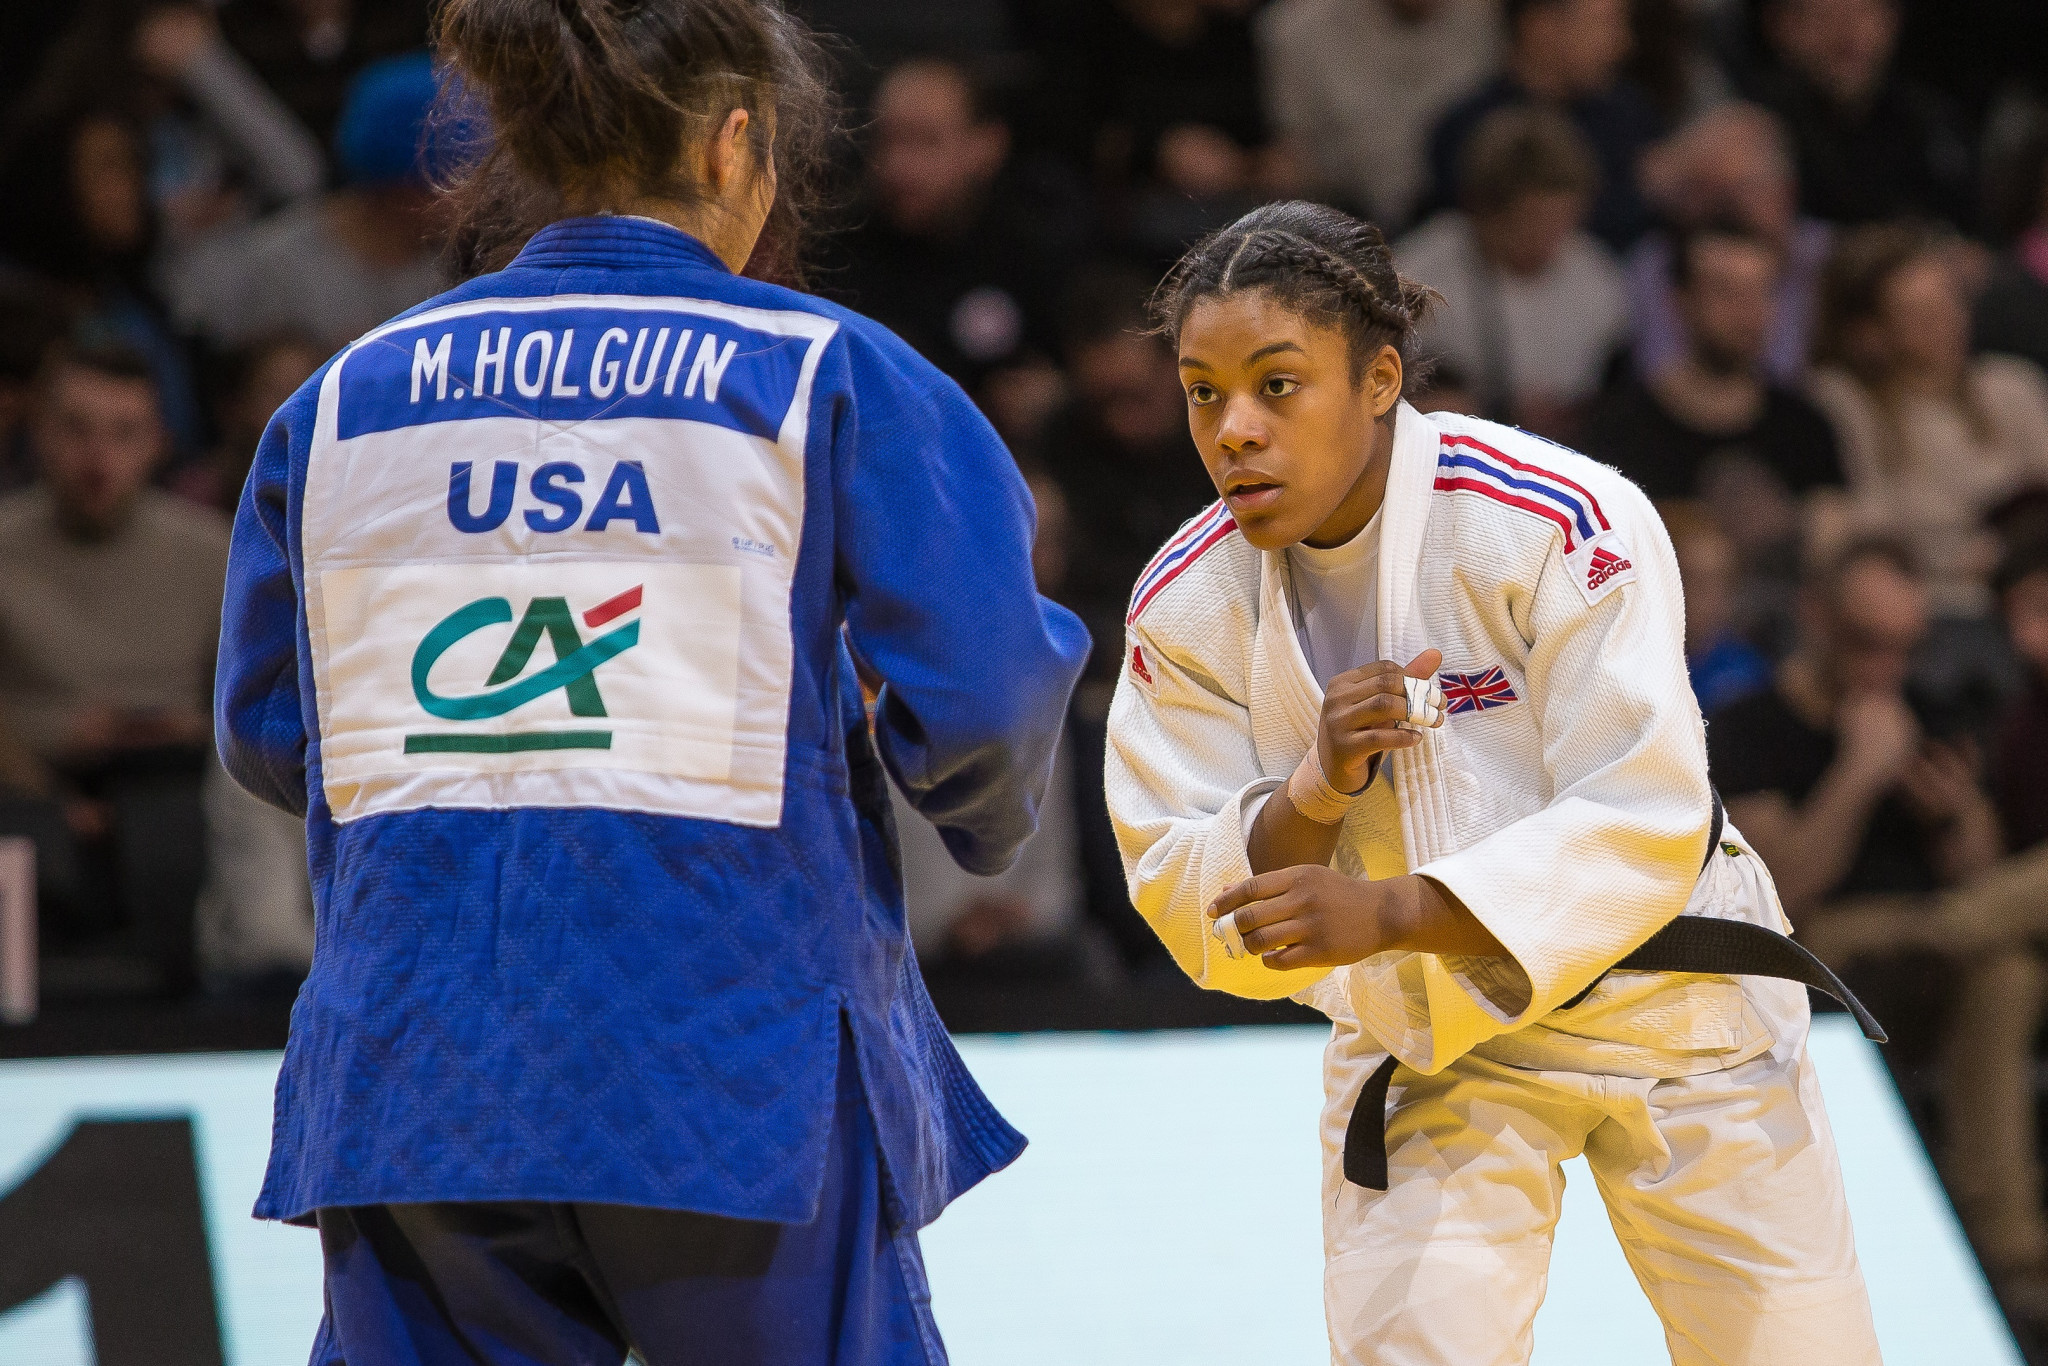 Nekoda Smythe-Davis won gold in the women's 57kg division ©British Judo